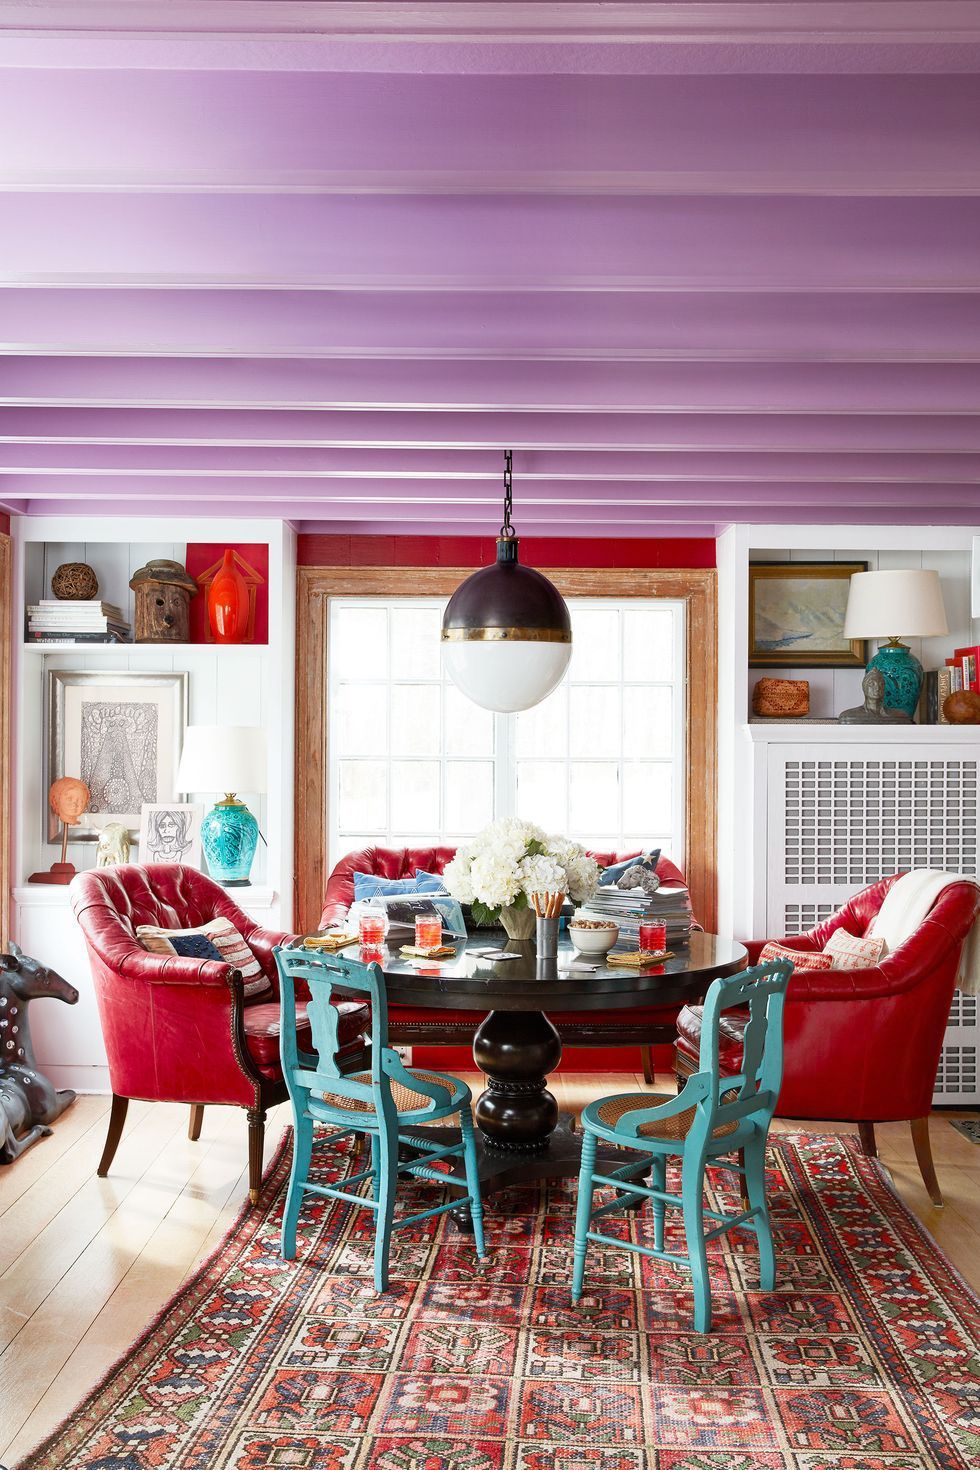 Phòng ăn được bài trí độc đáo với những chiếc ghế màu xanh ngọc lam, trần nhà màu tím, thảm trải thổ cẩm, ghế bành màu đỏ